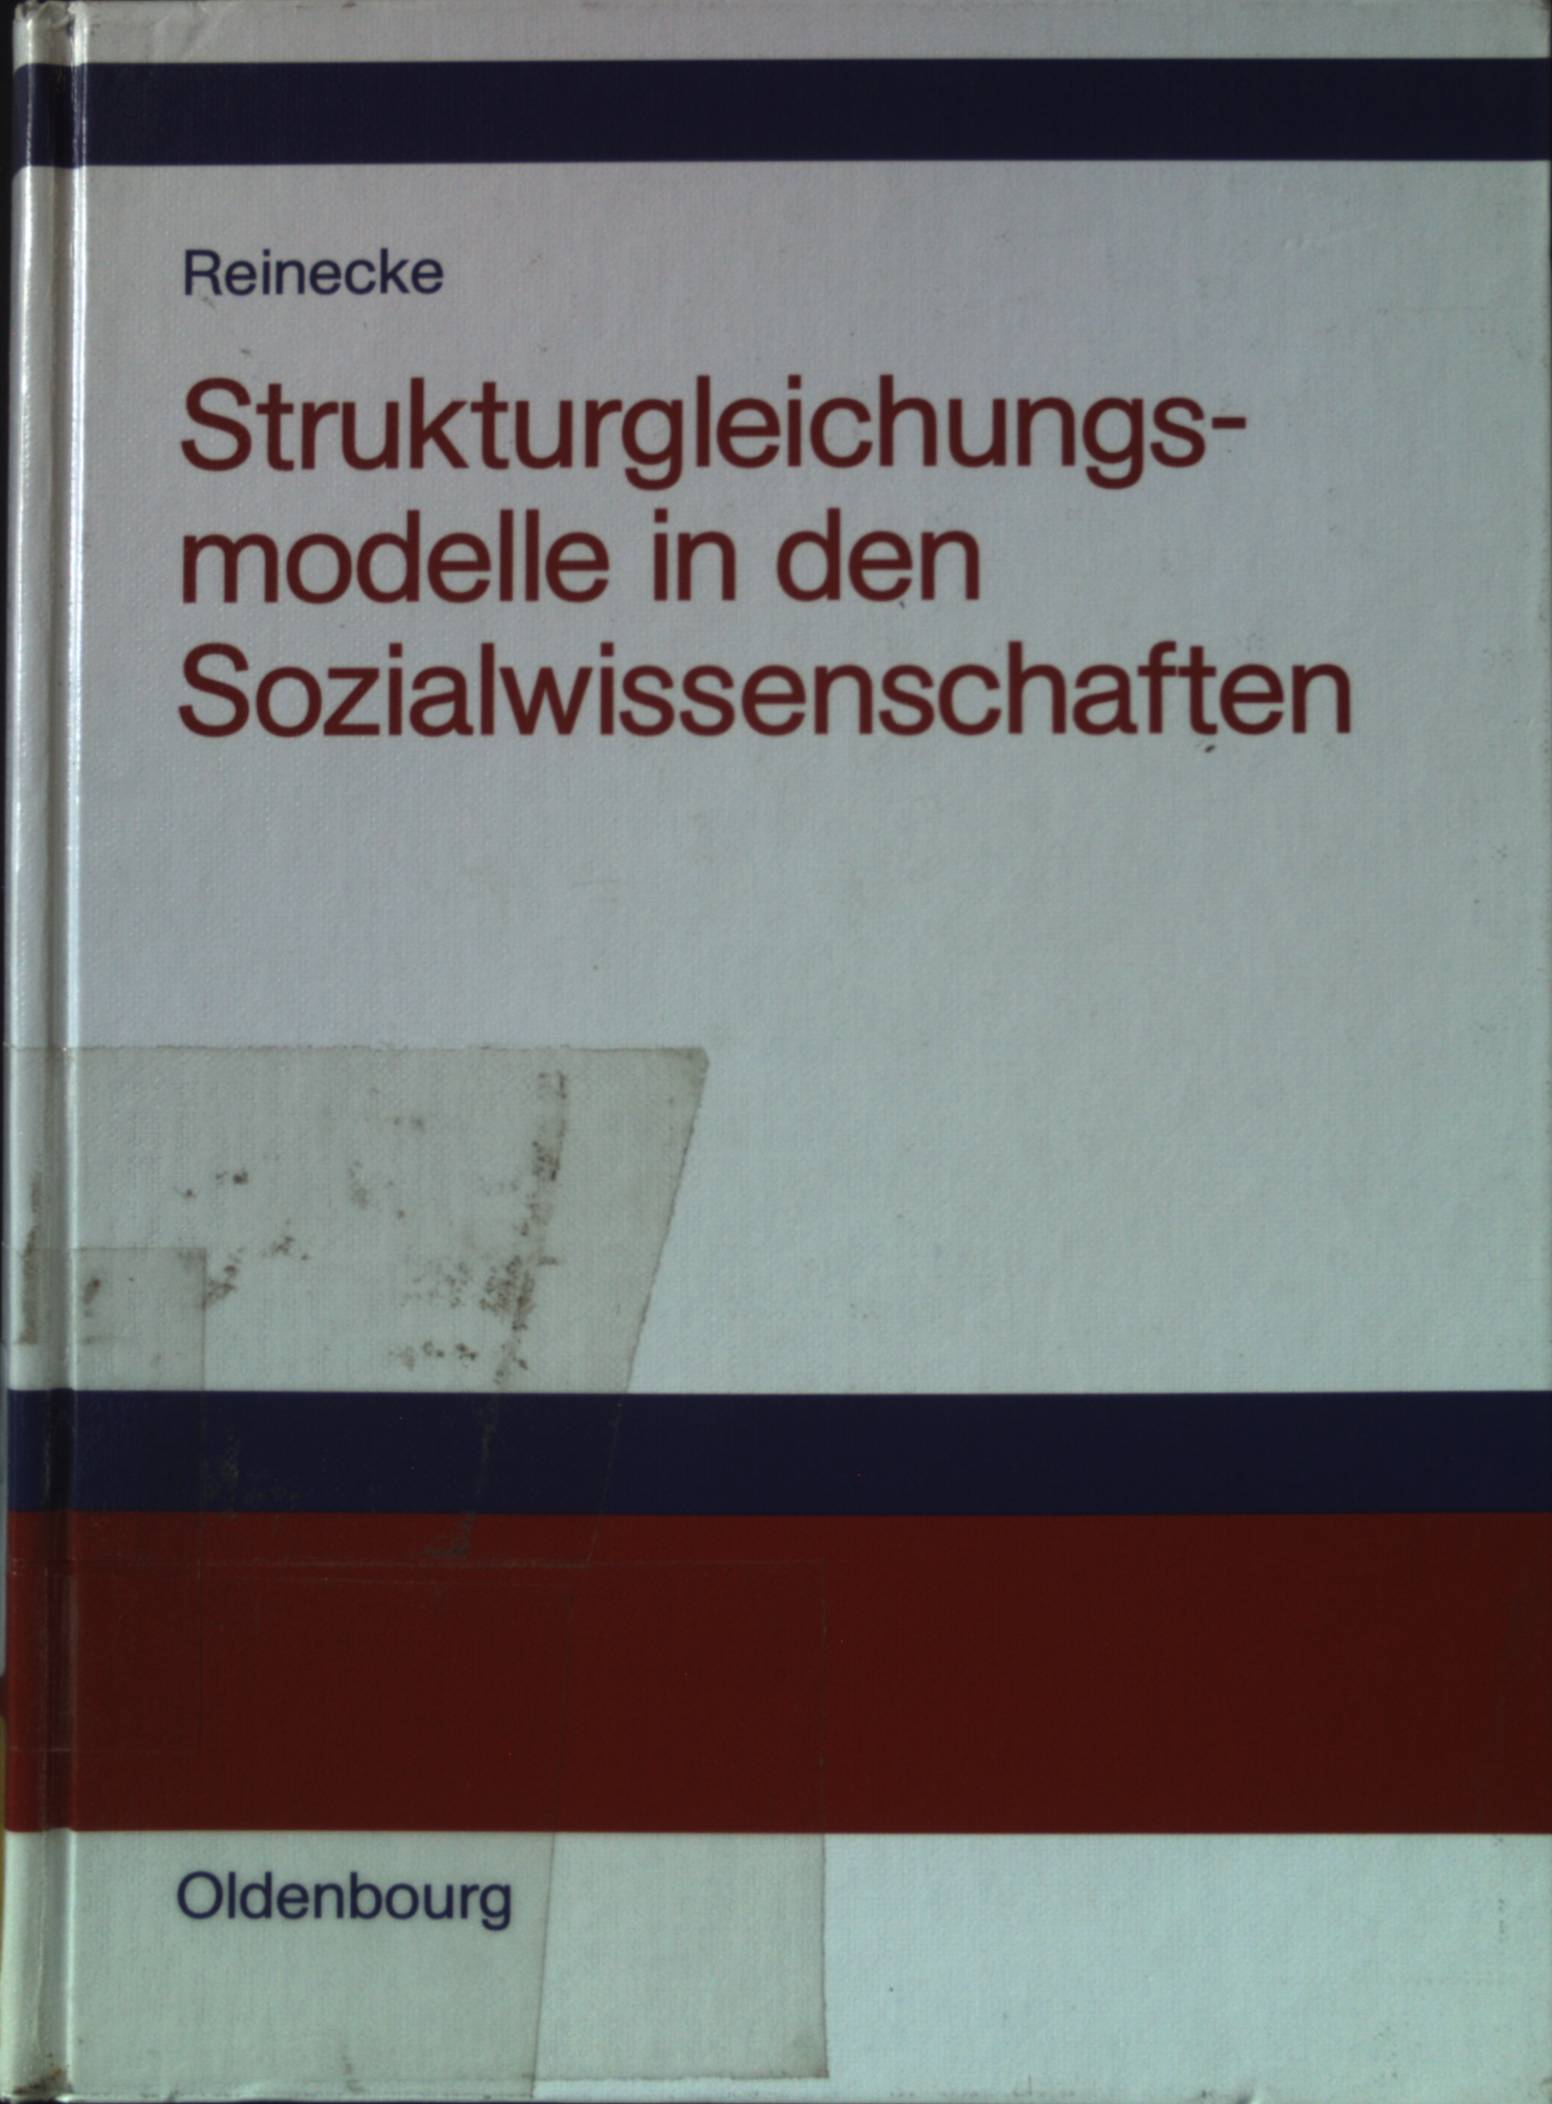 Strukturgleichungsmodelle in den Sozialwissenschaften. - Reinecke, Jost